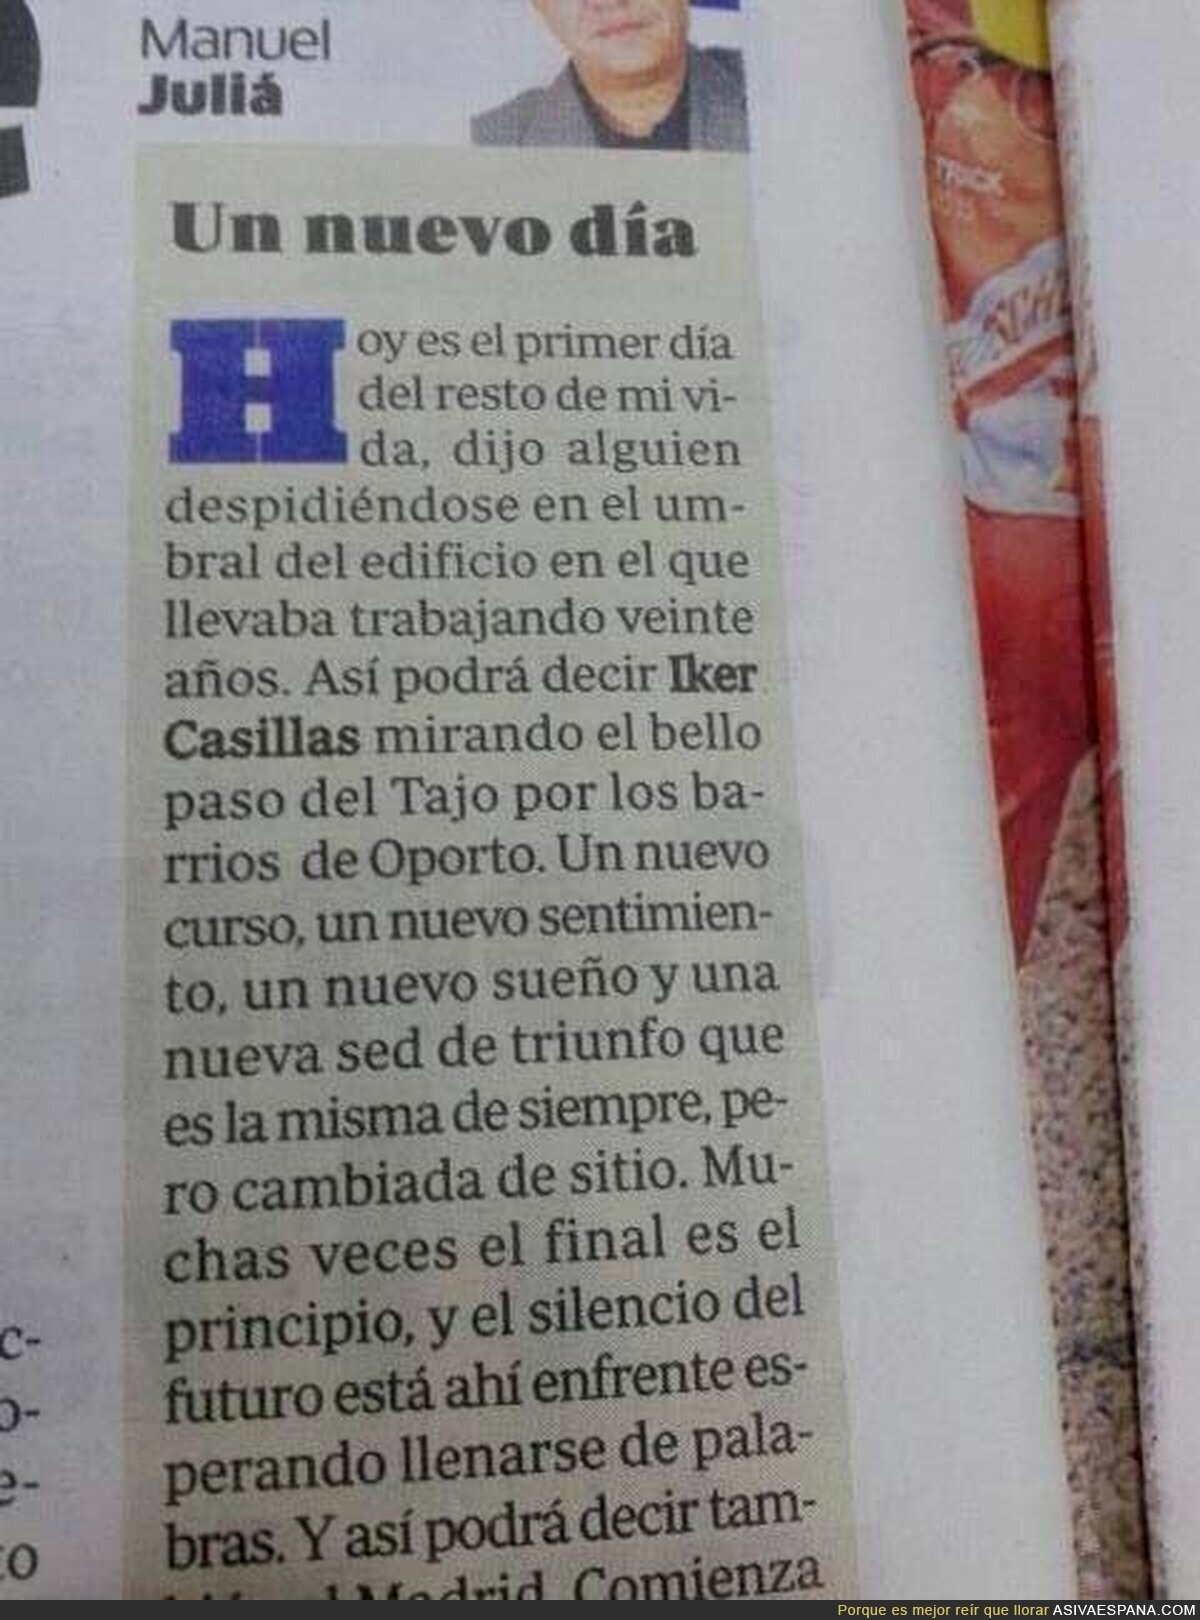 Vaya vistas va a tener Casillas, verá el Tajo desde Oporto. FAIL